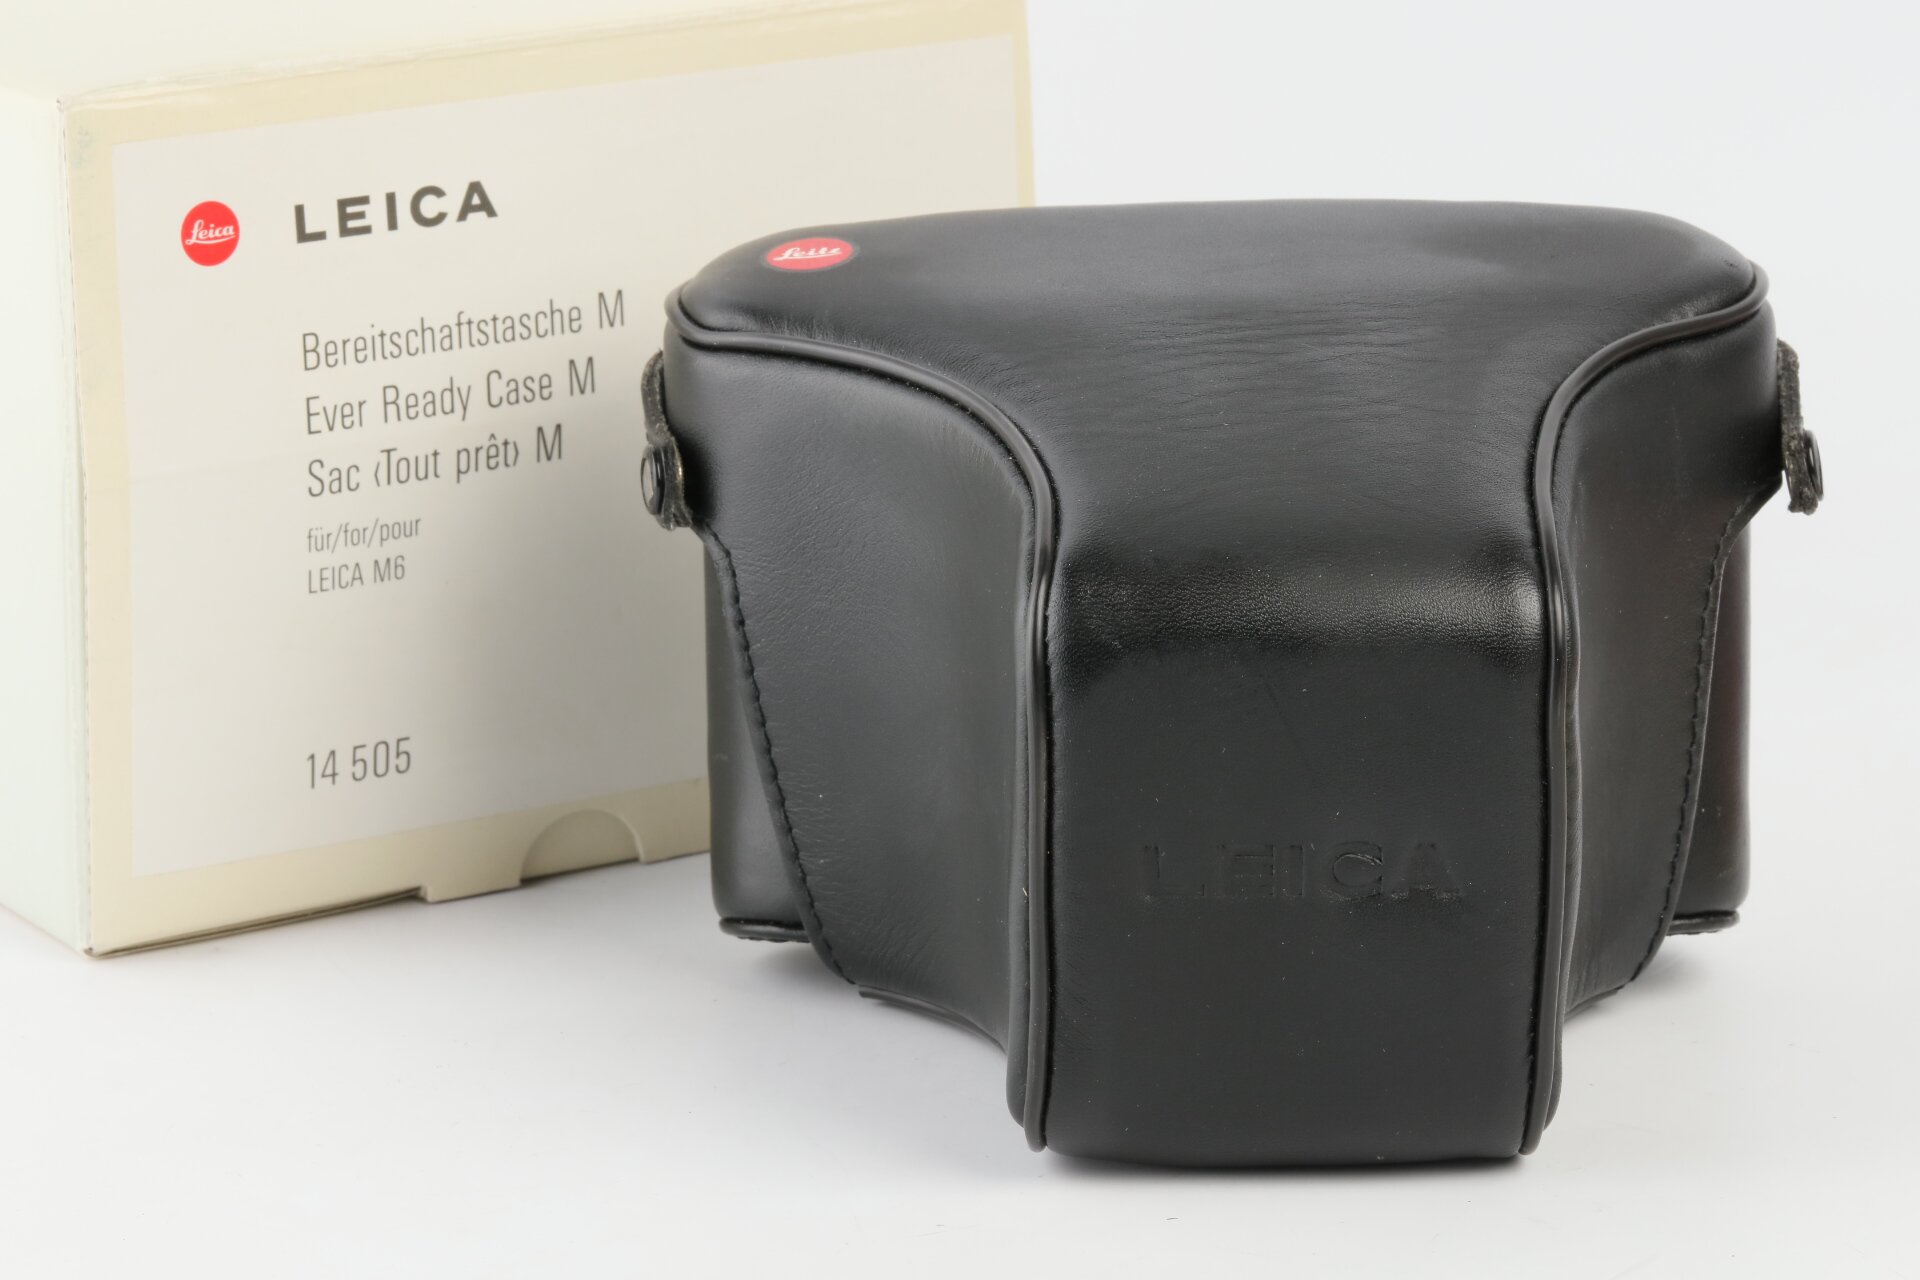 Leica Bereitschaftstasche M 14505 für Leica M6